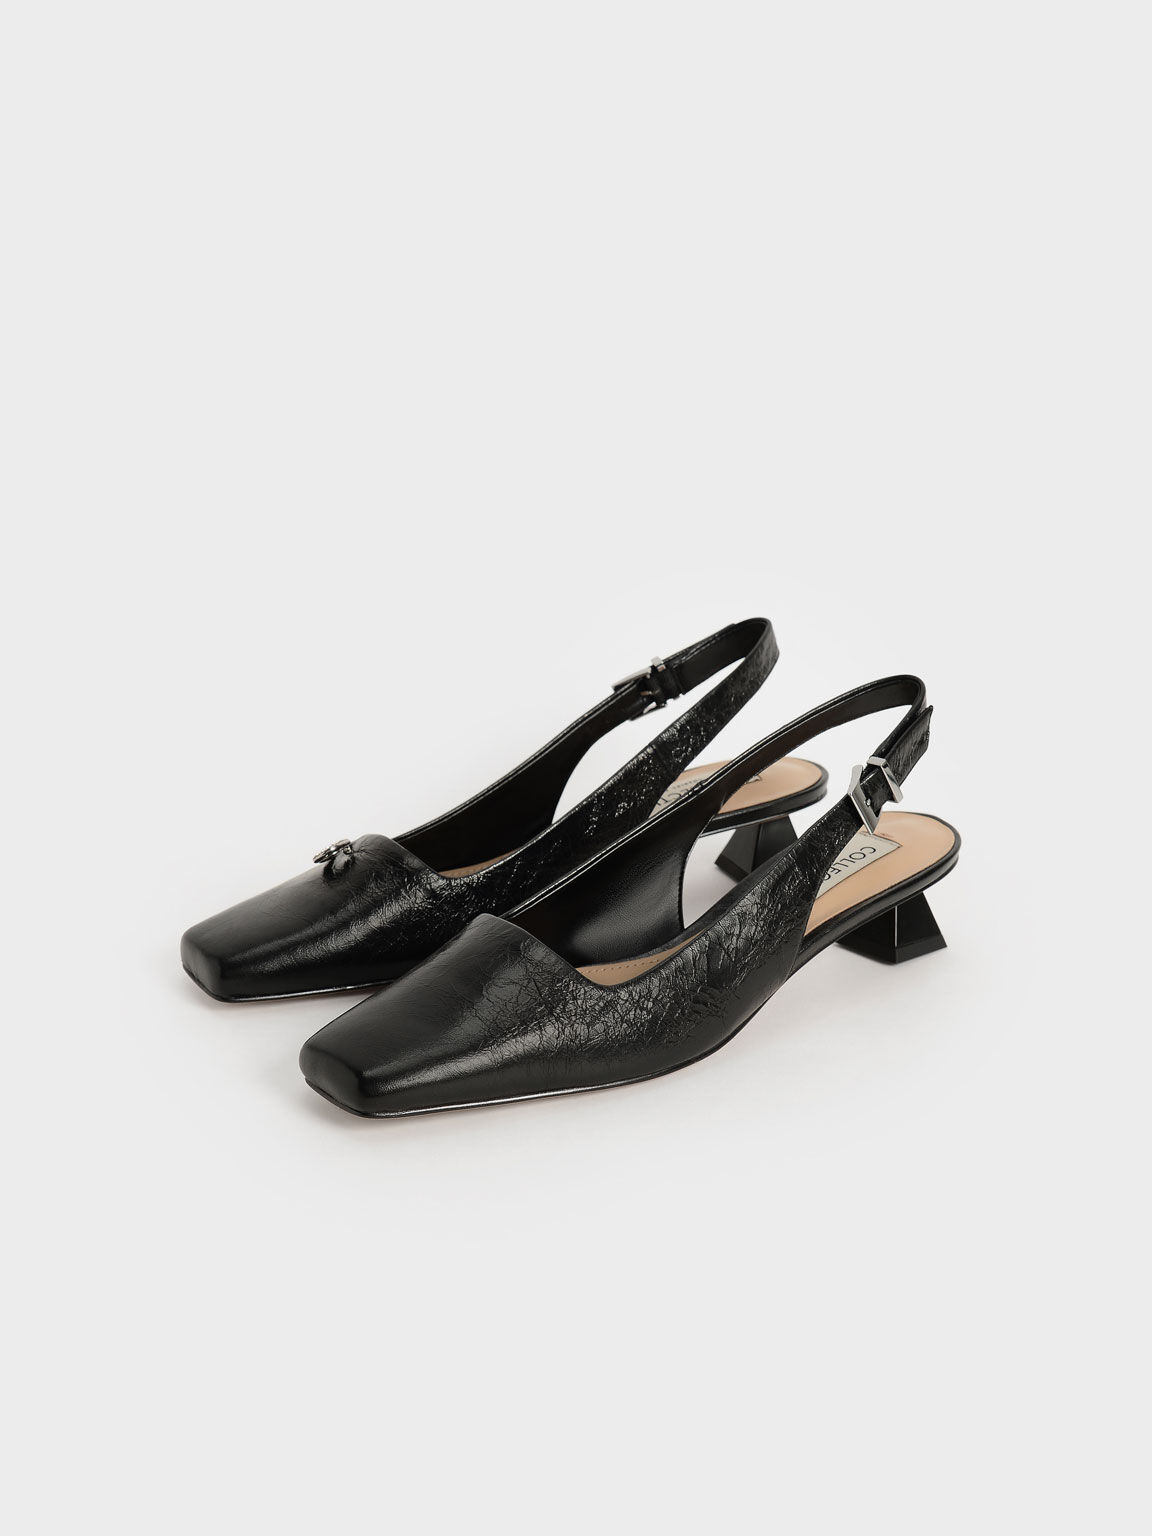 Gem-Embellished Leather Slingback Court Shoes, Black, hi-res